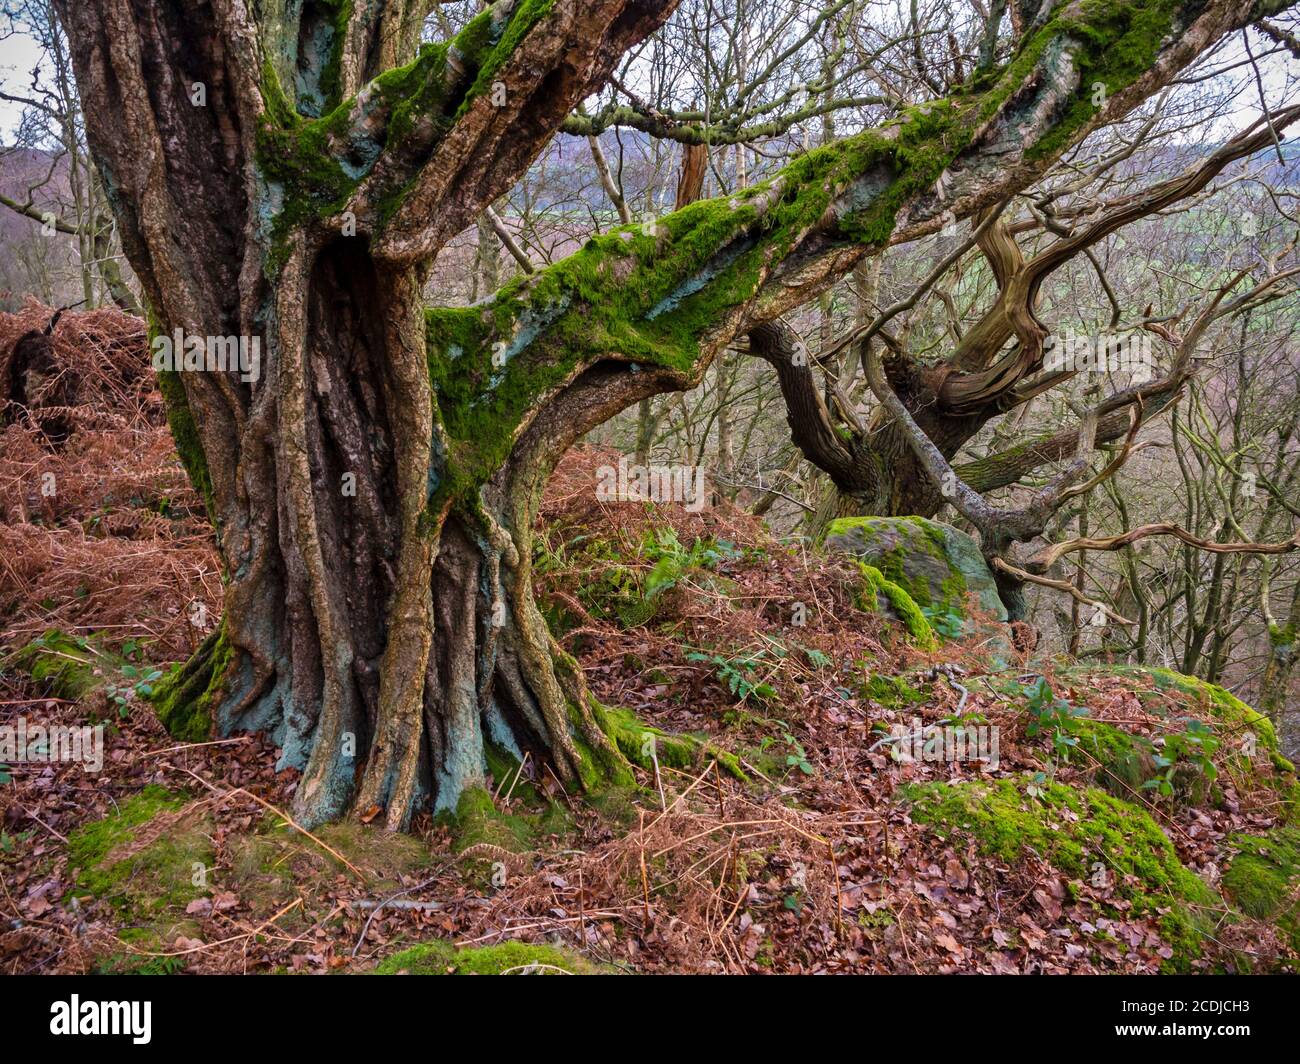 Viejos árboles retorcidos en el bosque con rocas y ramas cubiertas de musgo. Foto de stock